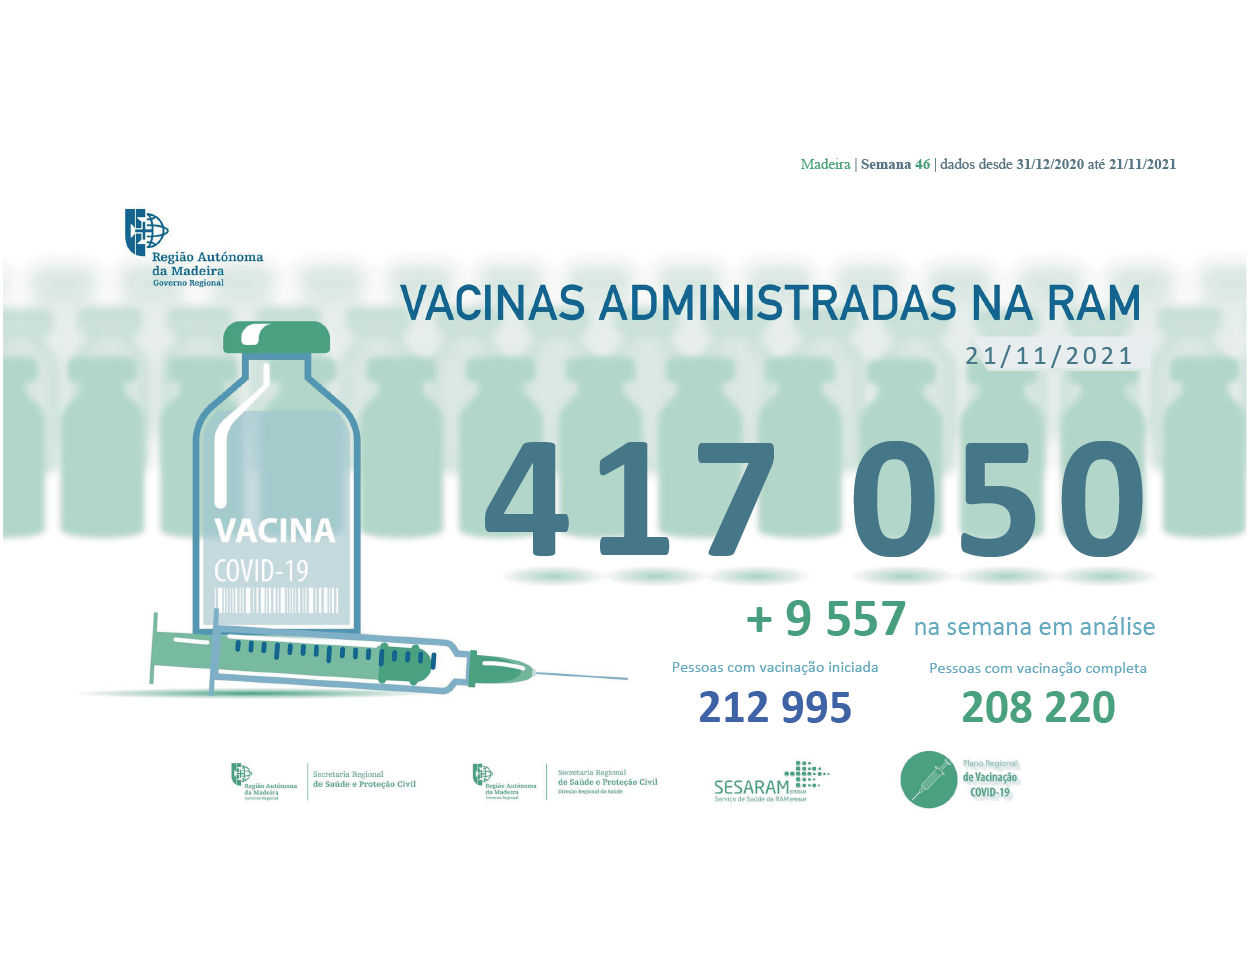 Administradas mais de 417 050 vacinas contra a COVID-19 na RAM